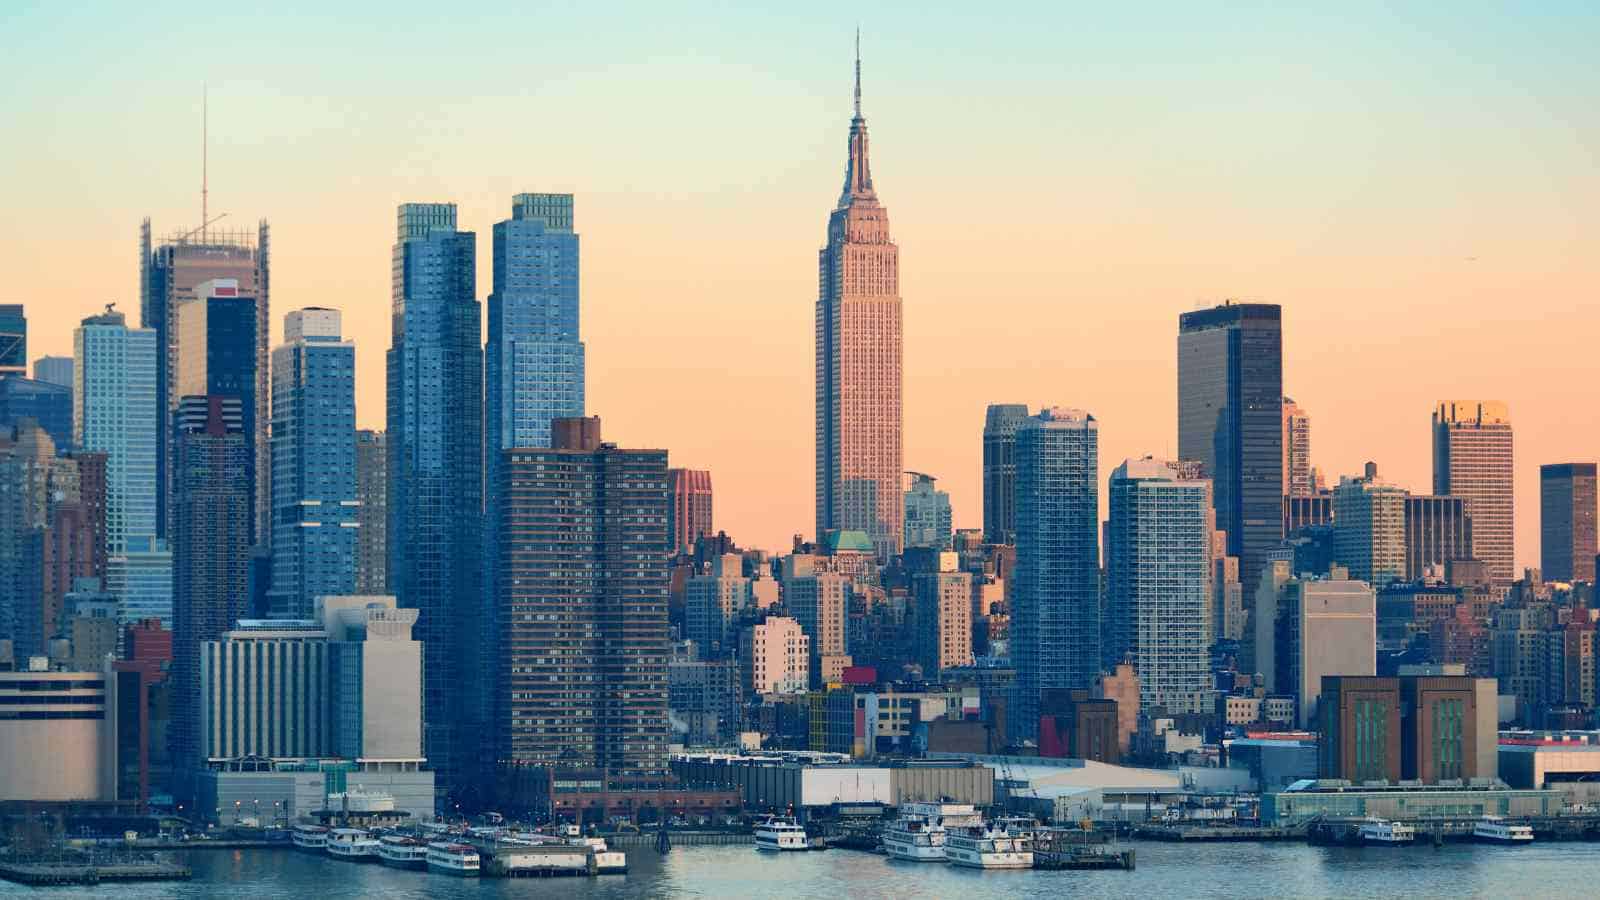 La classifica finale delle città più congestionate del mondo mette New York sulla cima, seguita a poca distanza da Roma e Milano.